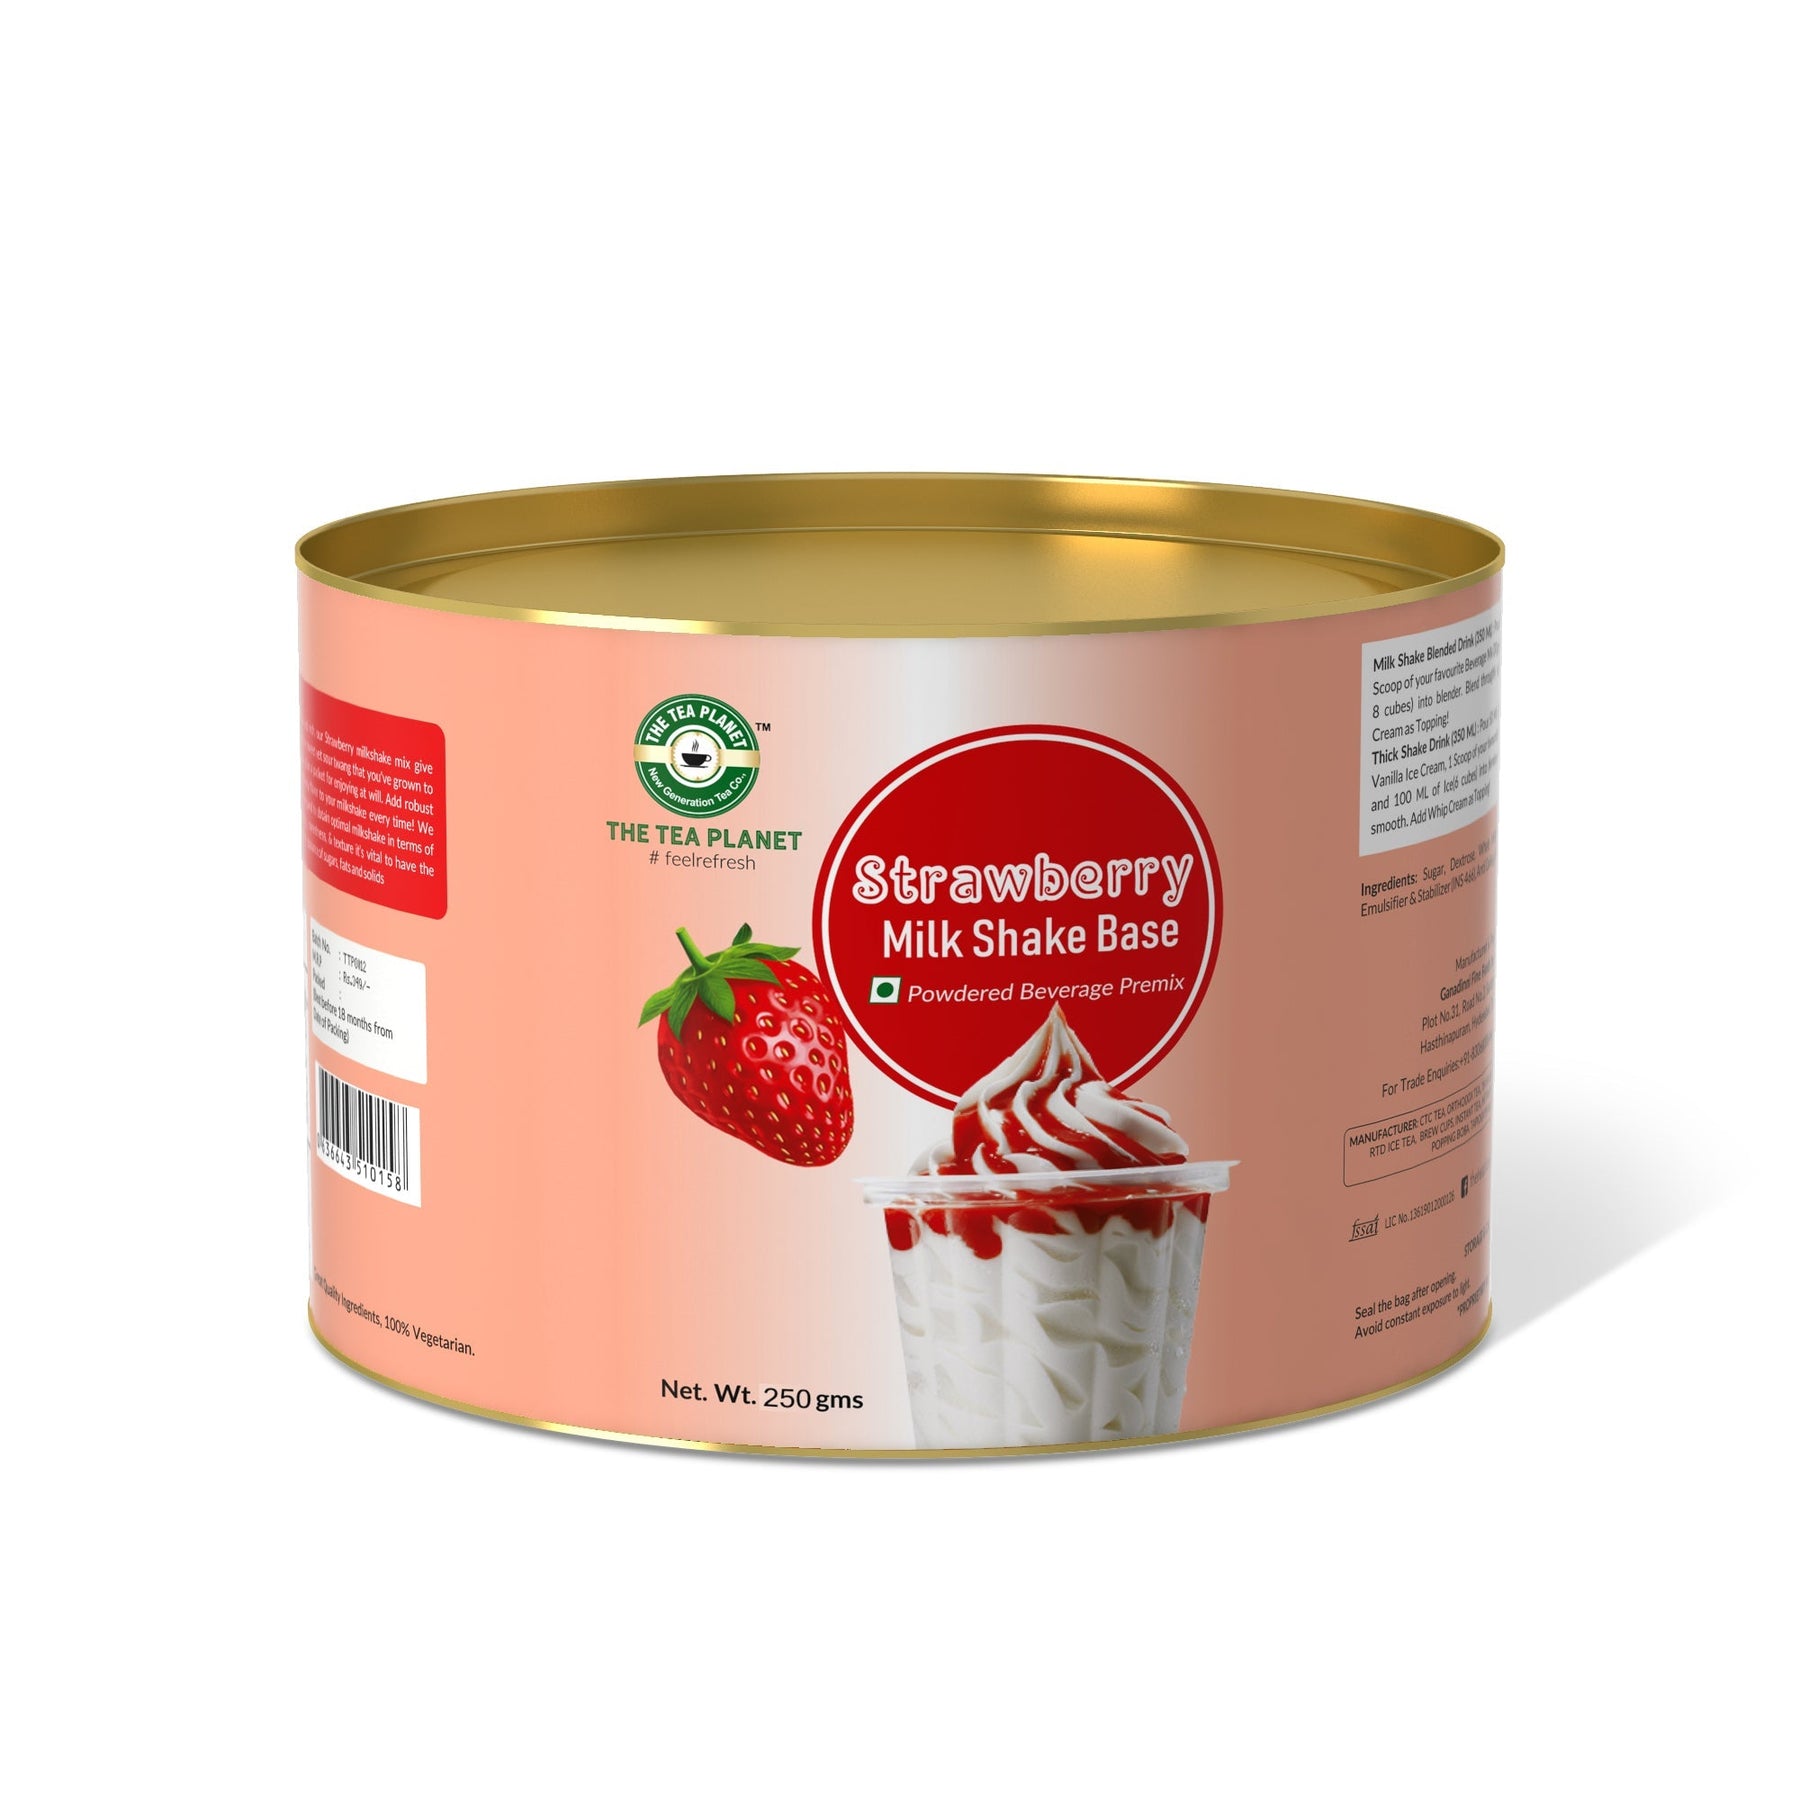 Strawberry Milkshake Mix - 800 gms